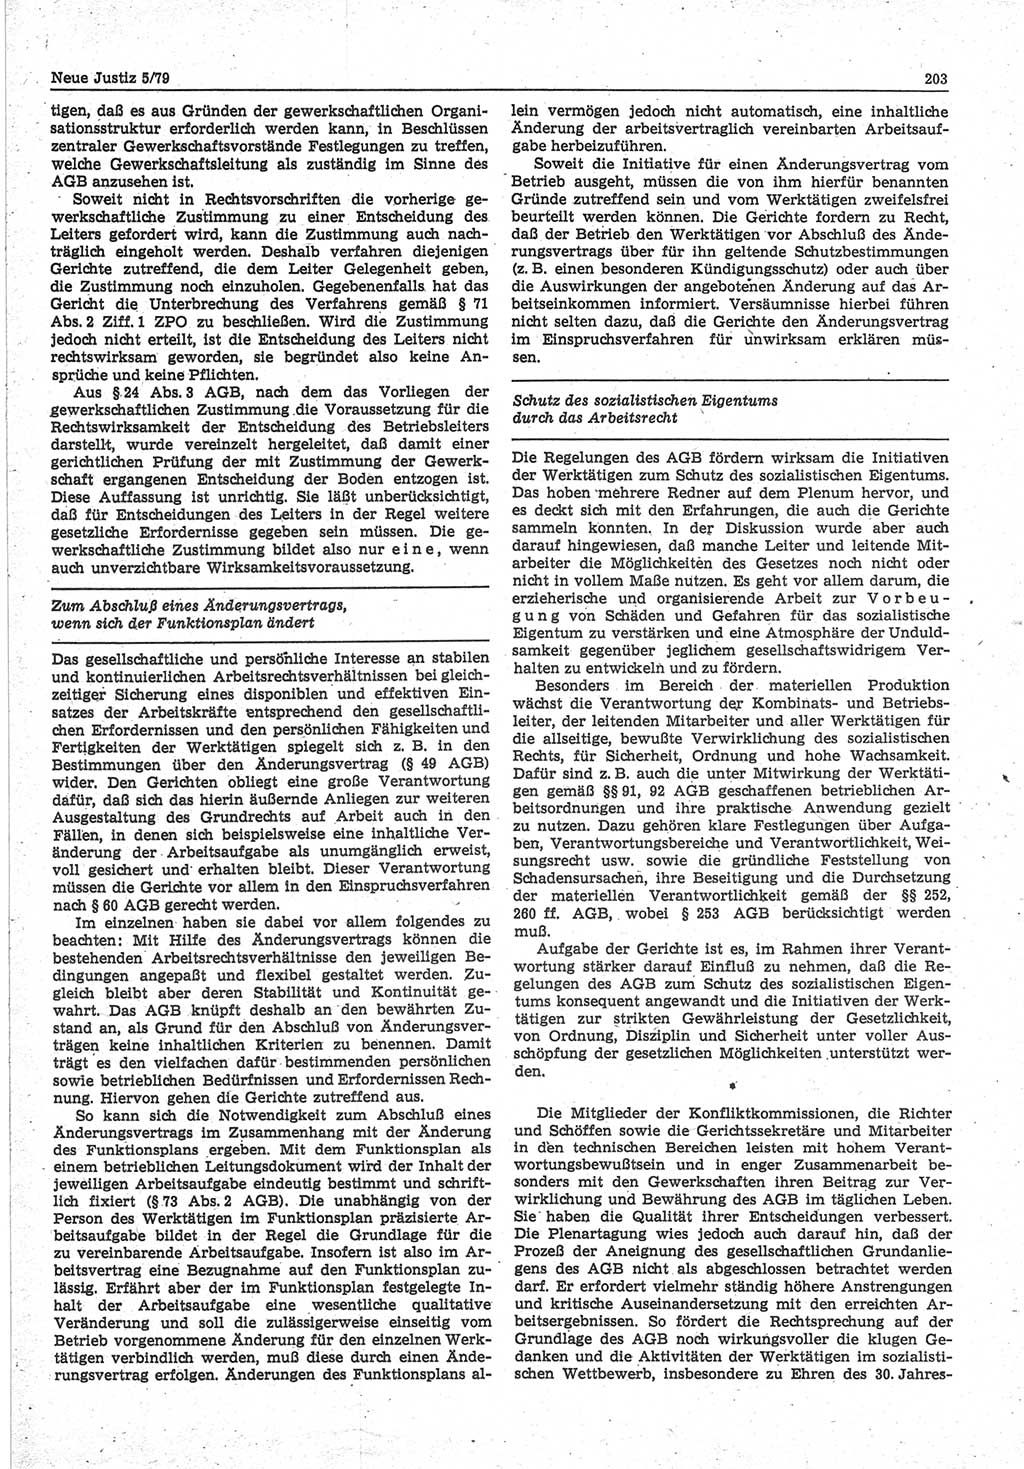 Neue Justiz (NJ), Zeitschrift für sozialistisches Recht und Gesetzlichkeit [Deutsche Demokratische Republik (DDR)], 33. Jahrgang 1979, Seite 203 (NJ DDR 1979, S. 203)